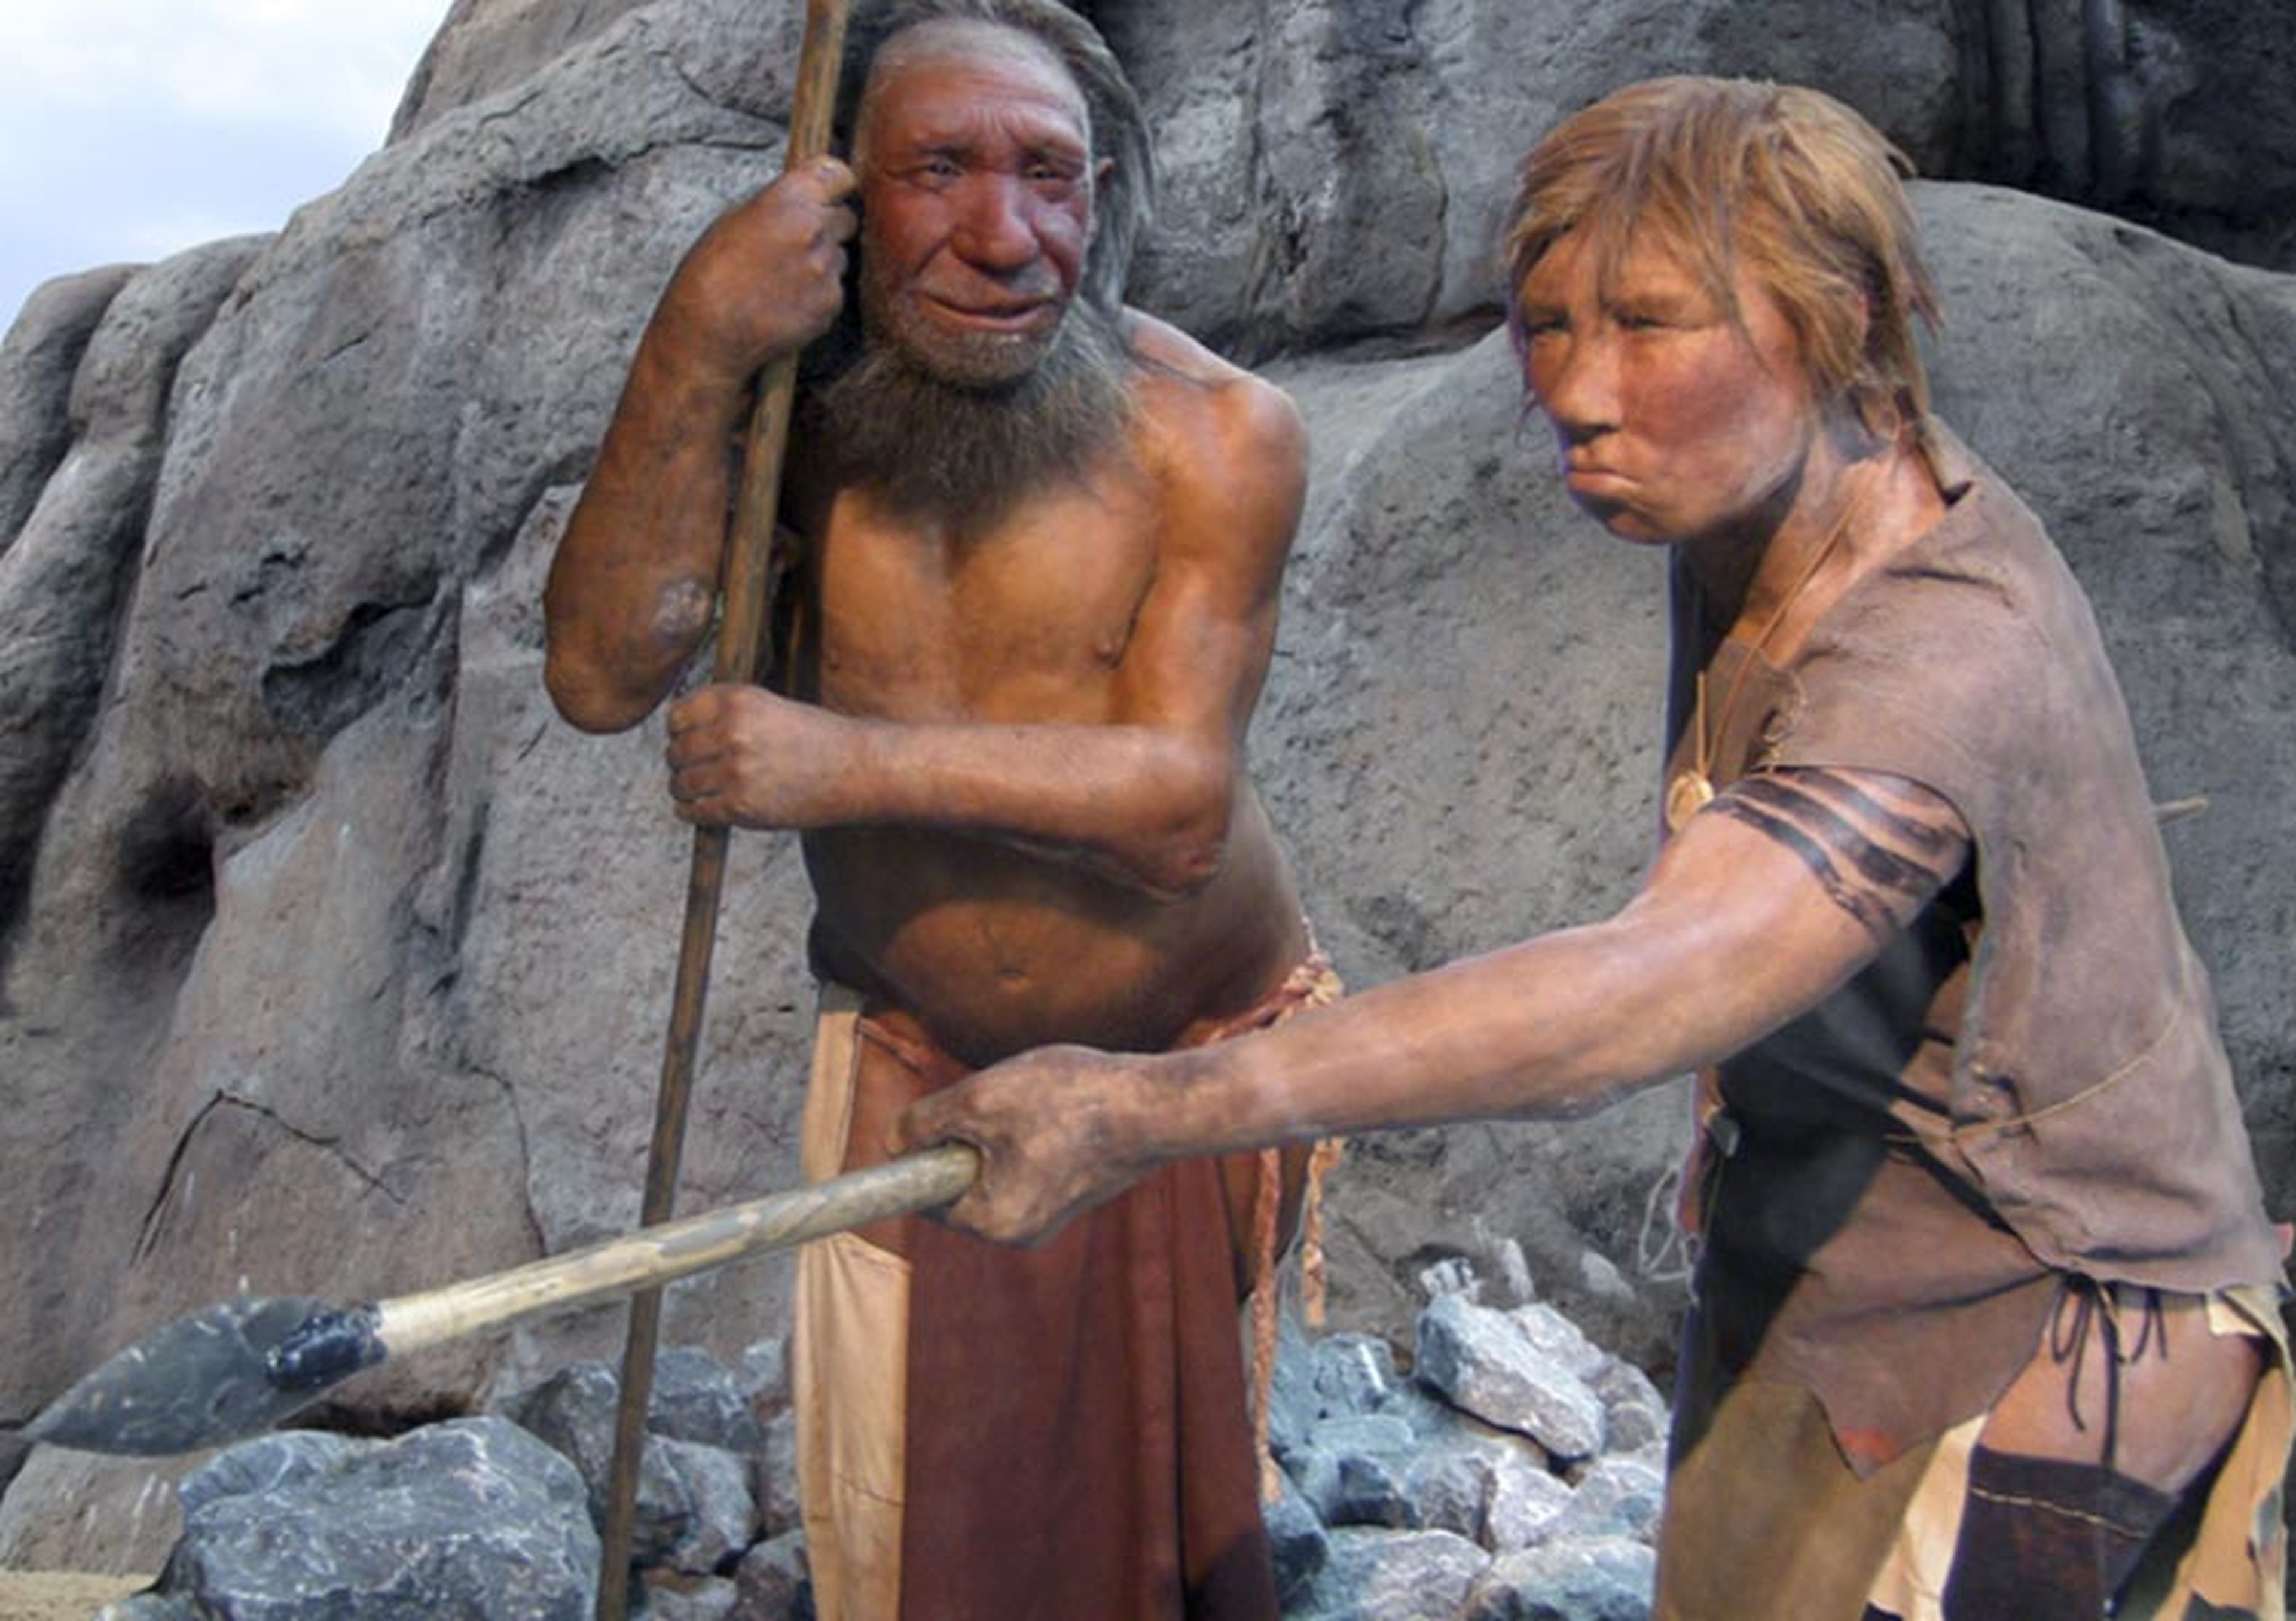 Descubiertos los restos de una hija de neandertal y denisovano